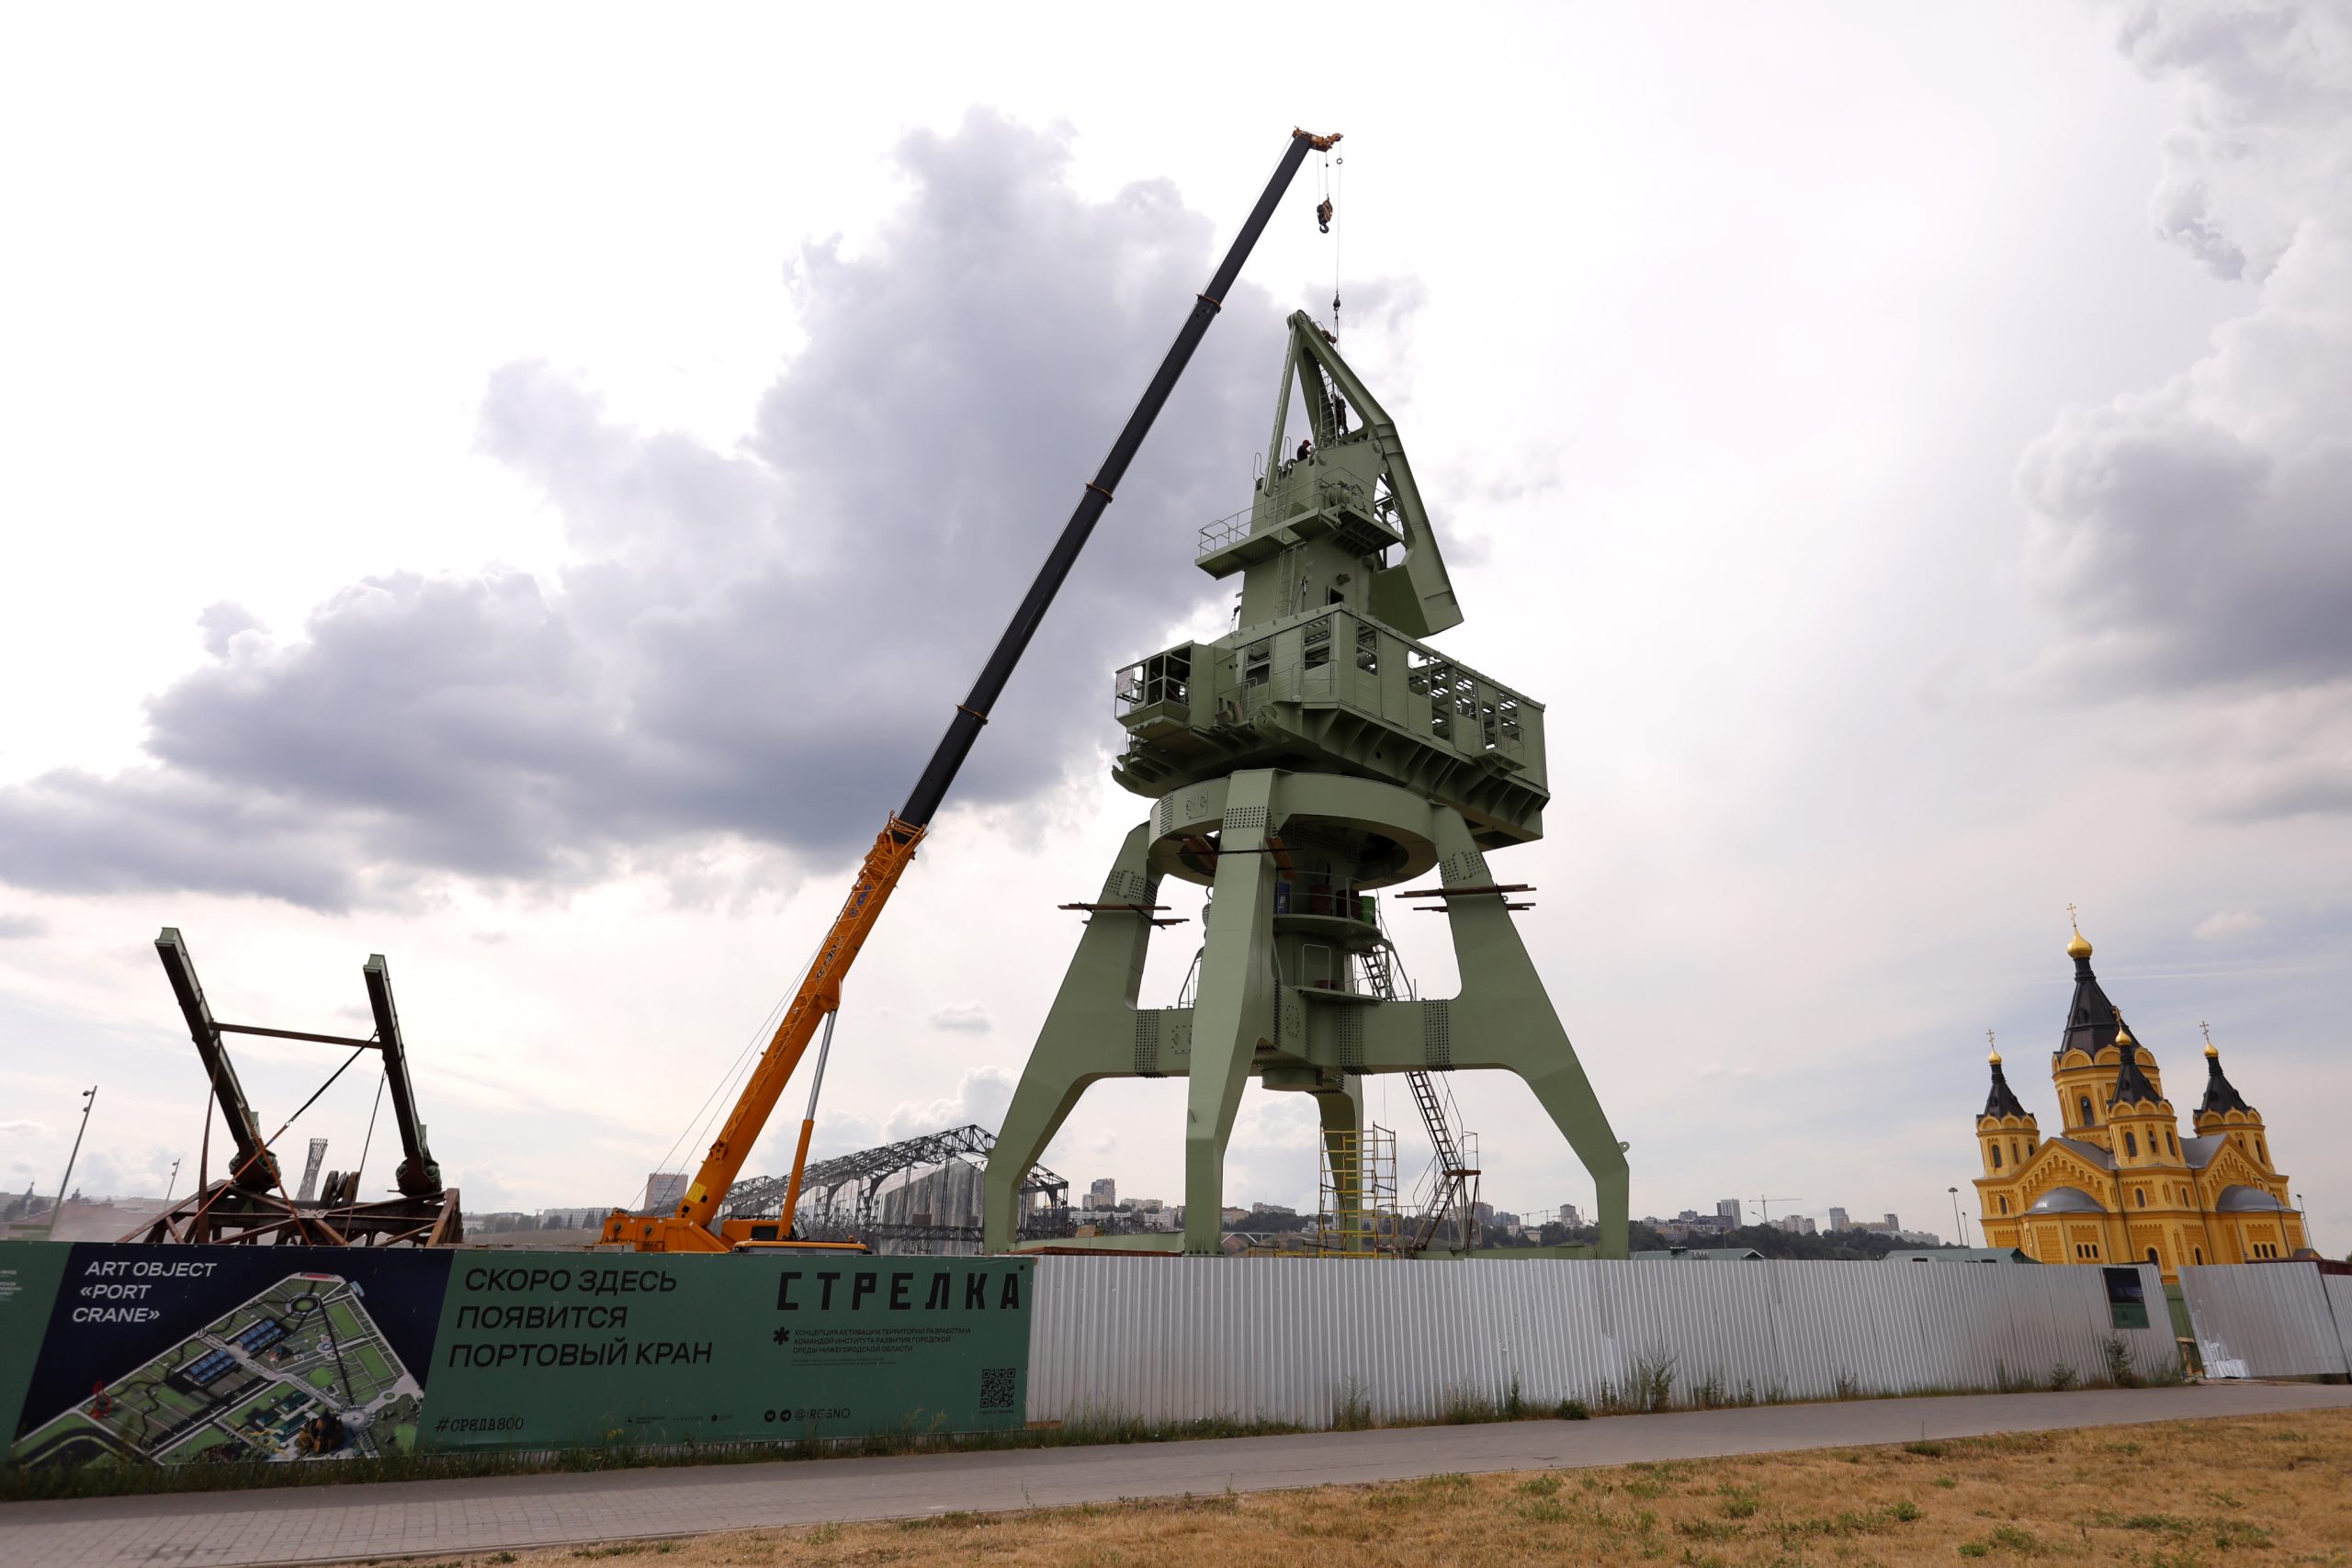 Арт-объект «Портовой кран» устанавливают на Стрелке: смотрим фото